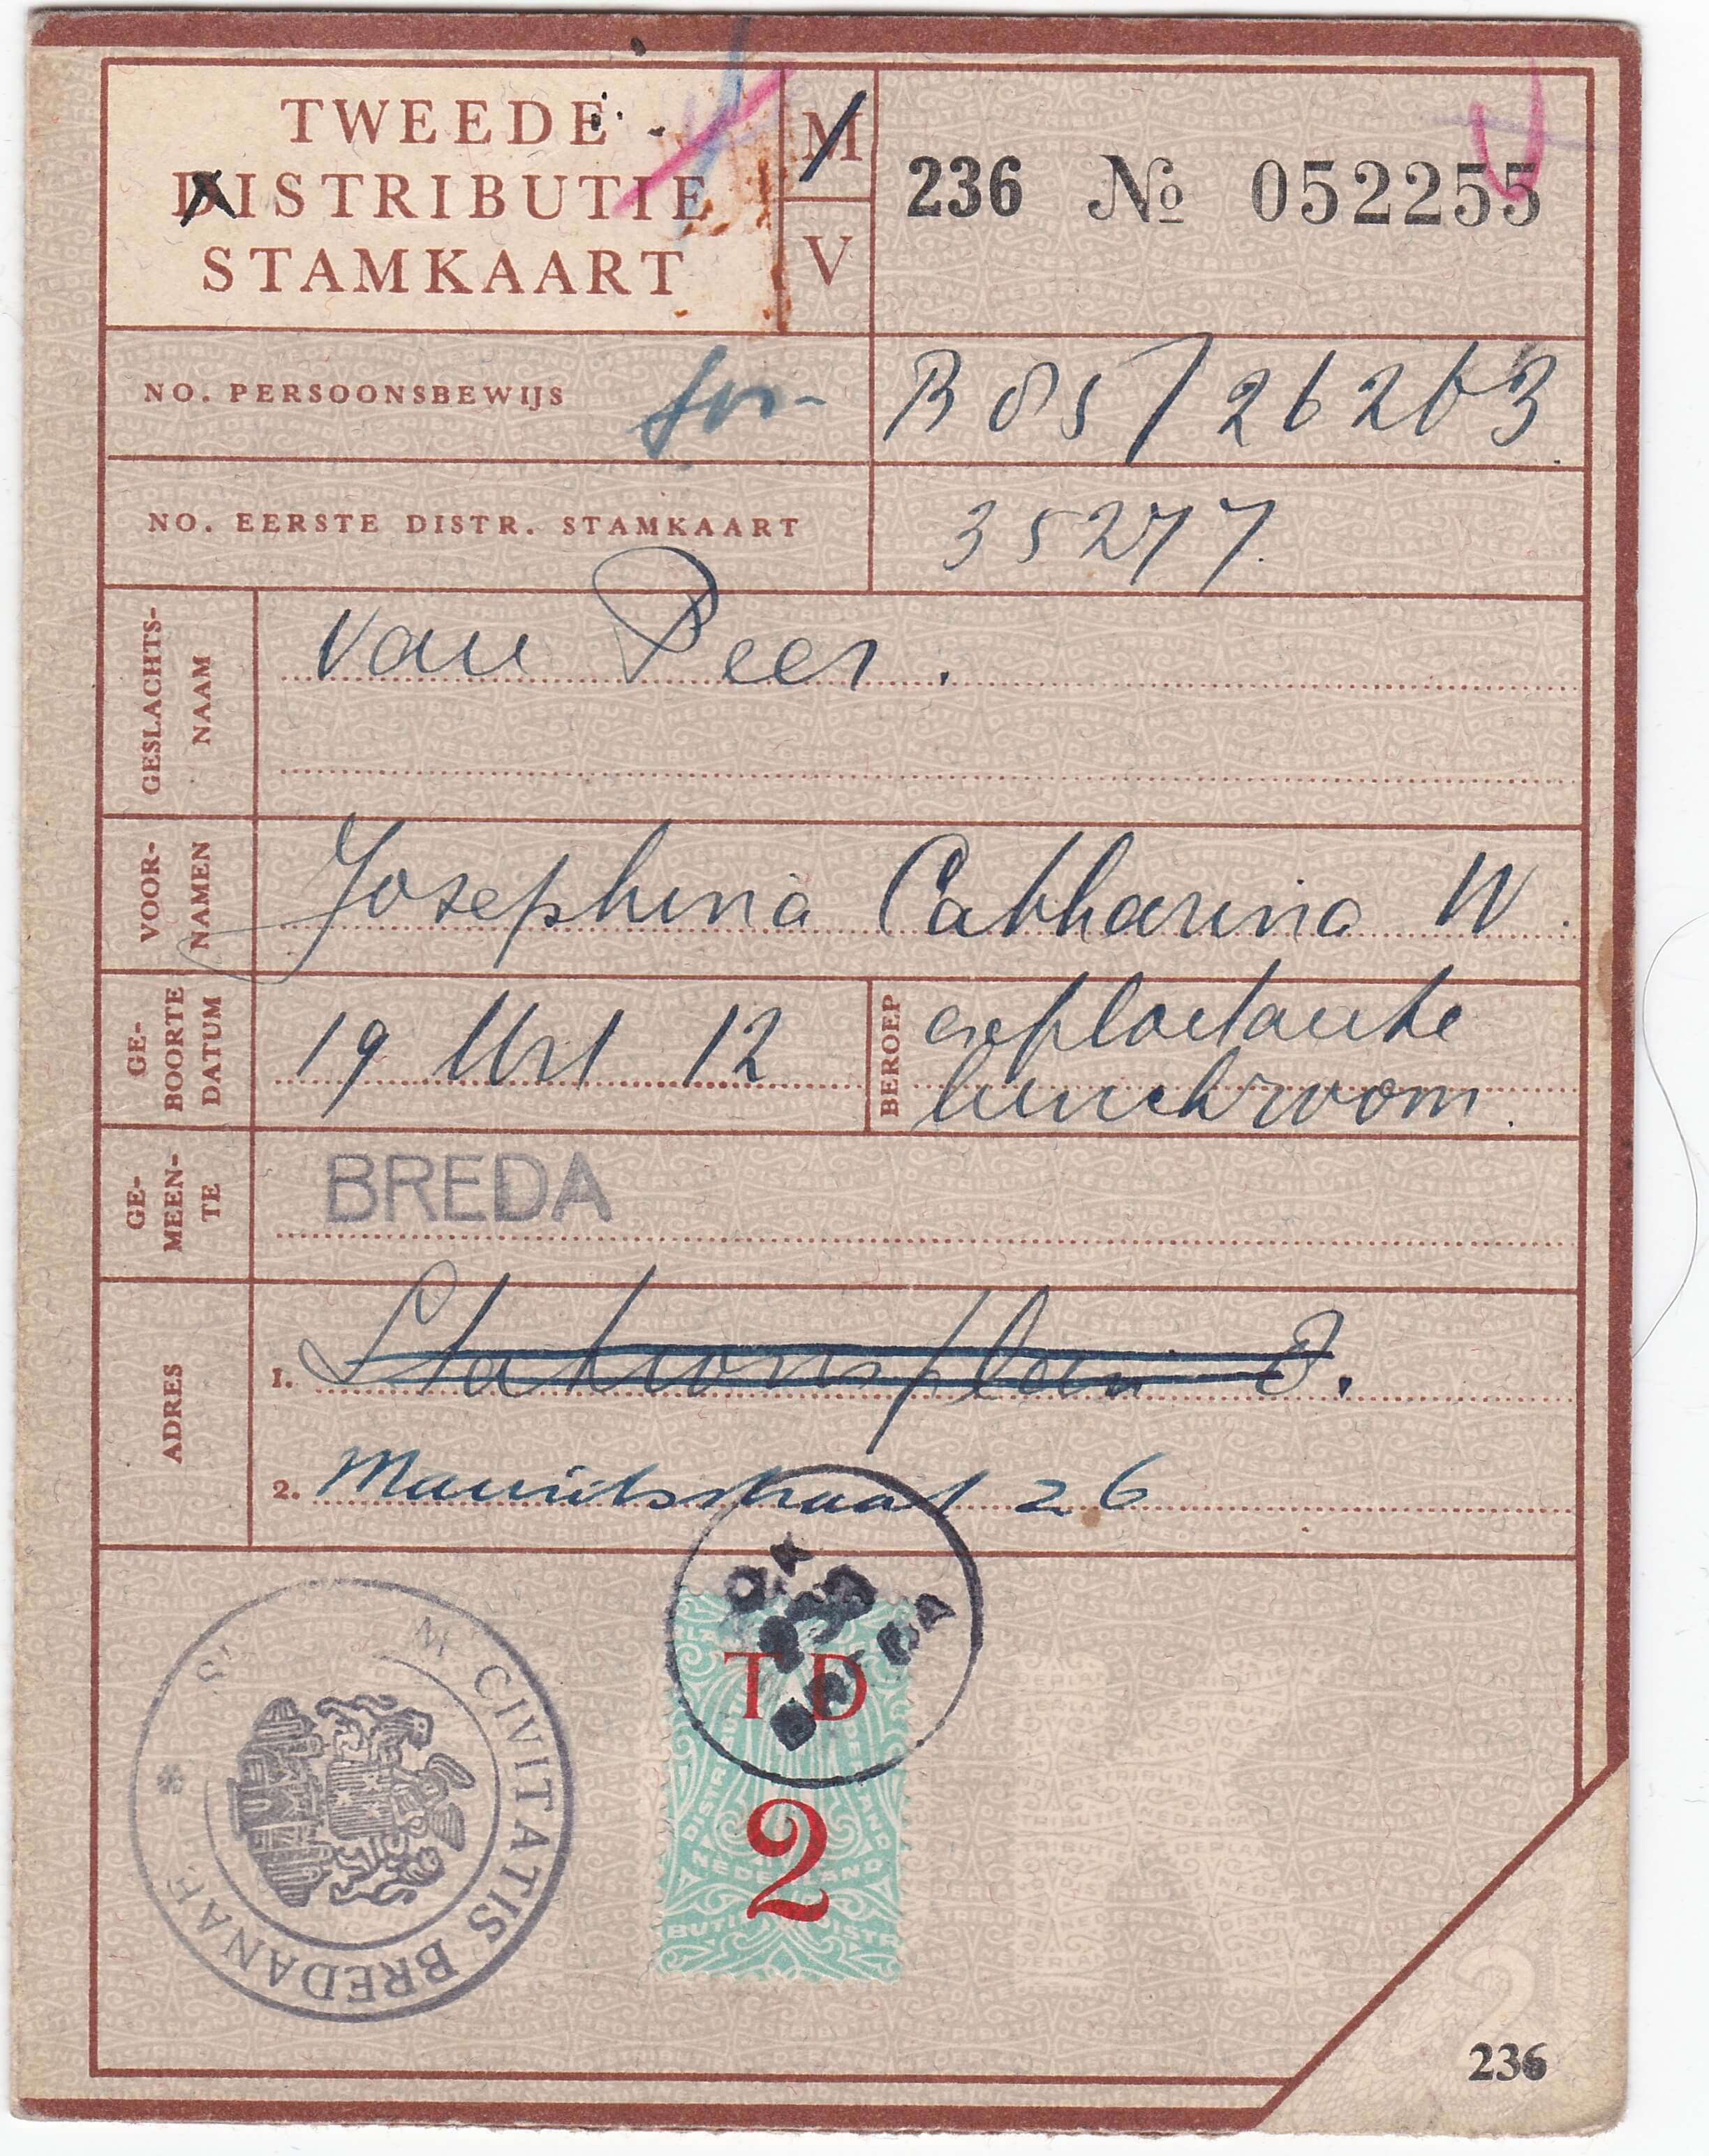 Tweede distributie stamkaart uit de tweede wereldoorlog